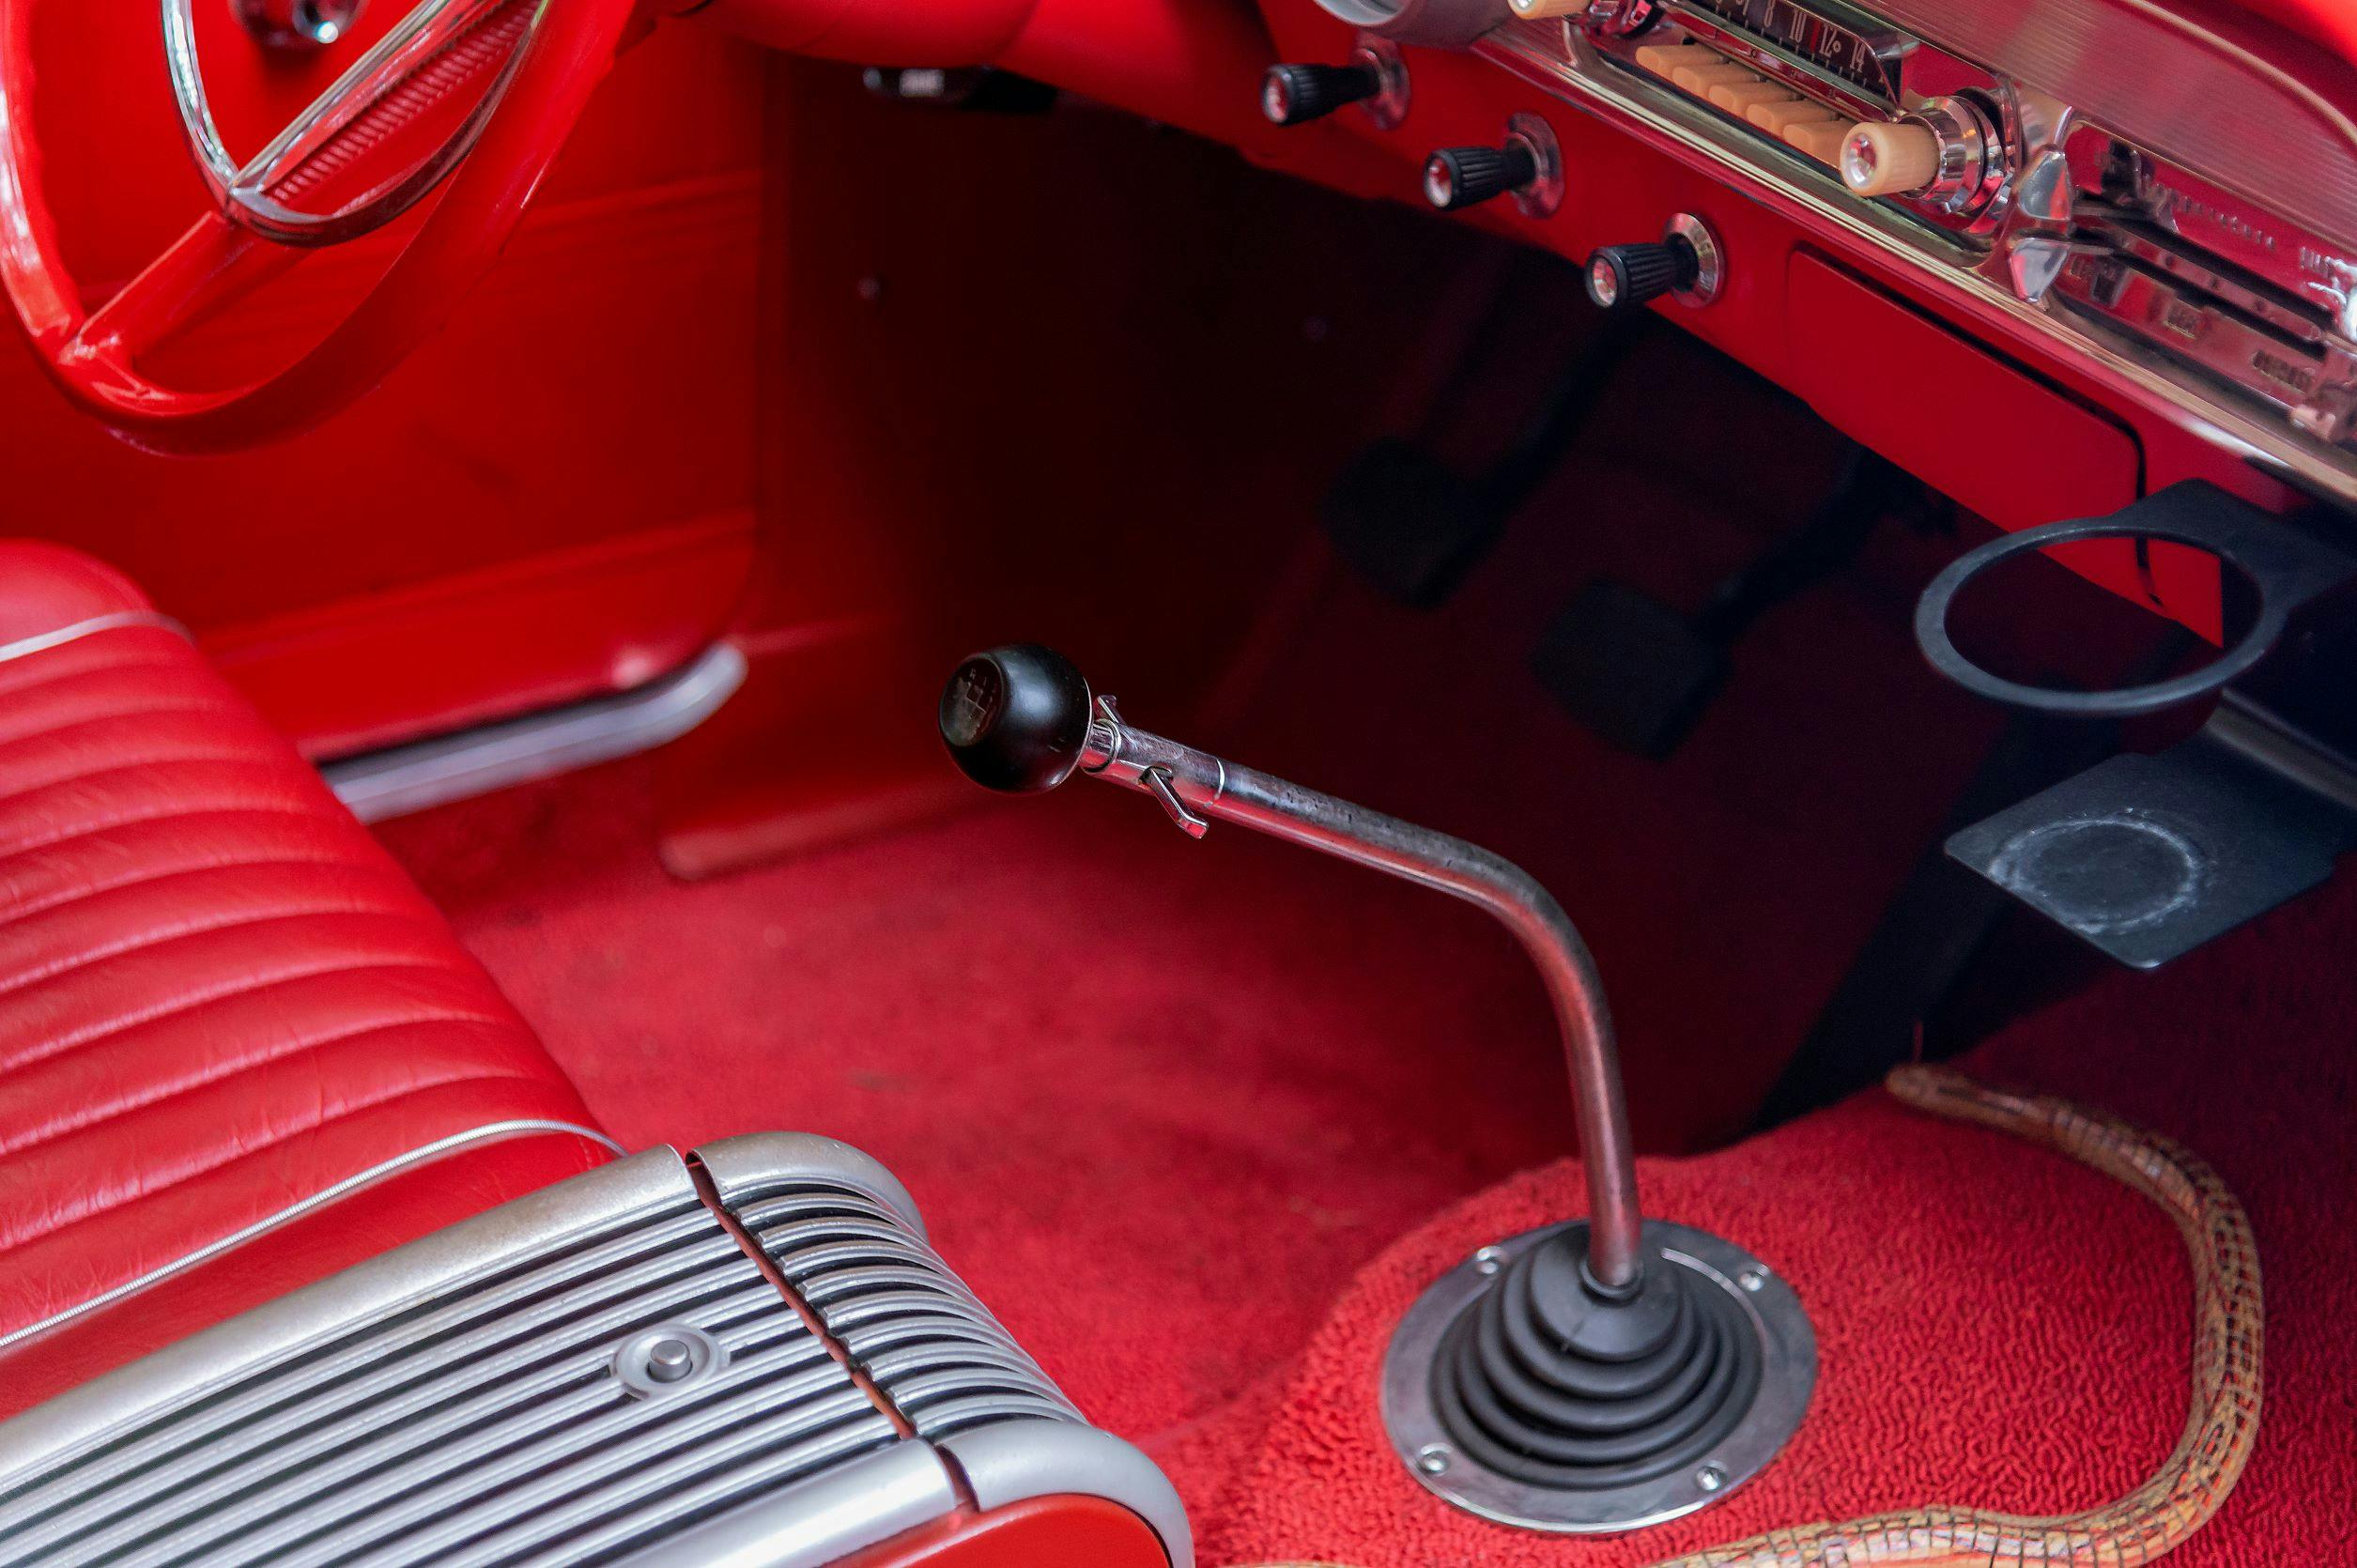 1963 Ford Fairlane 500 Squire Wagon interior stick shift